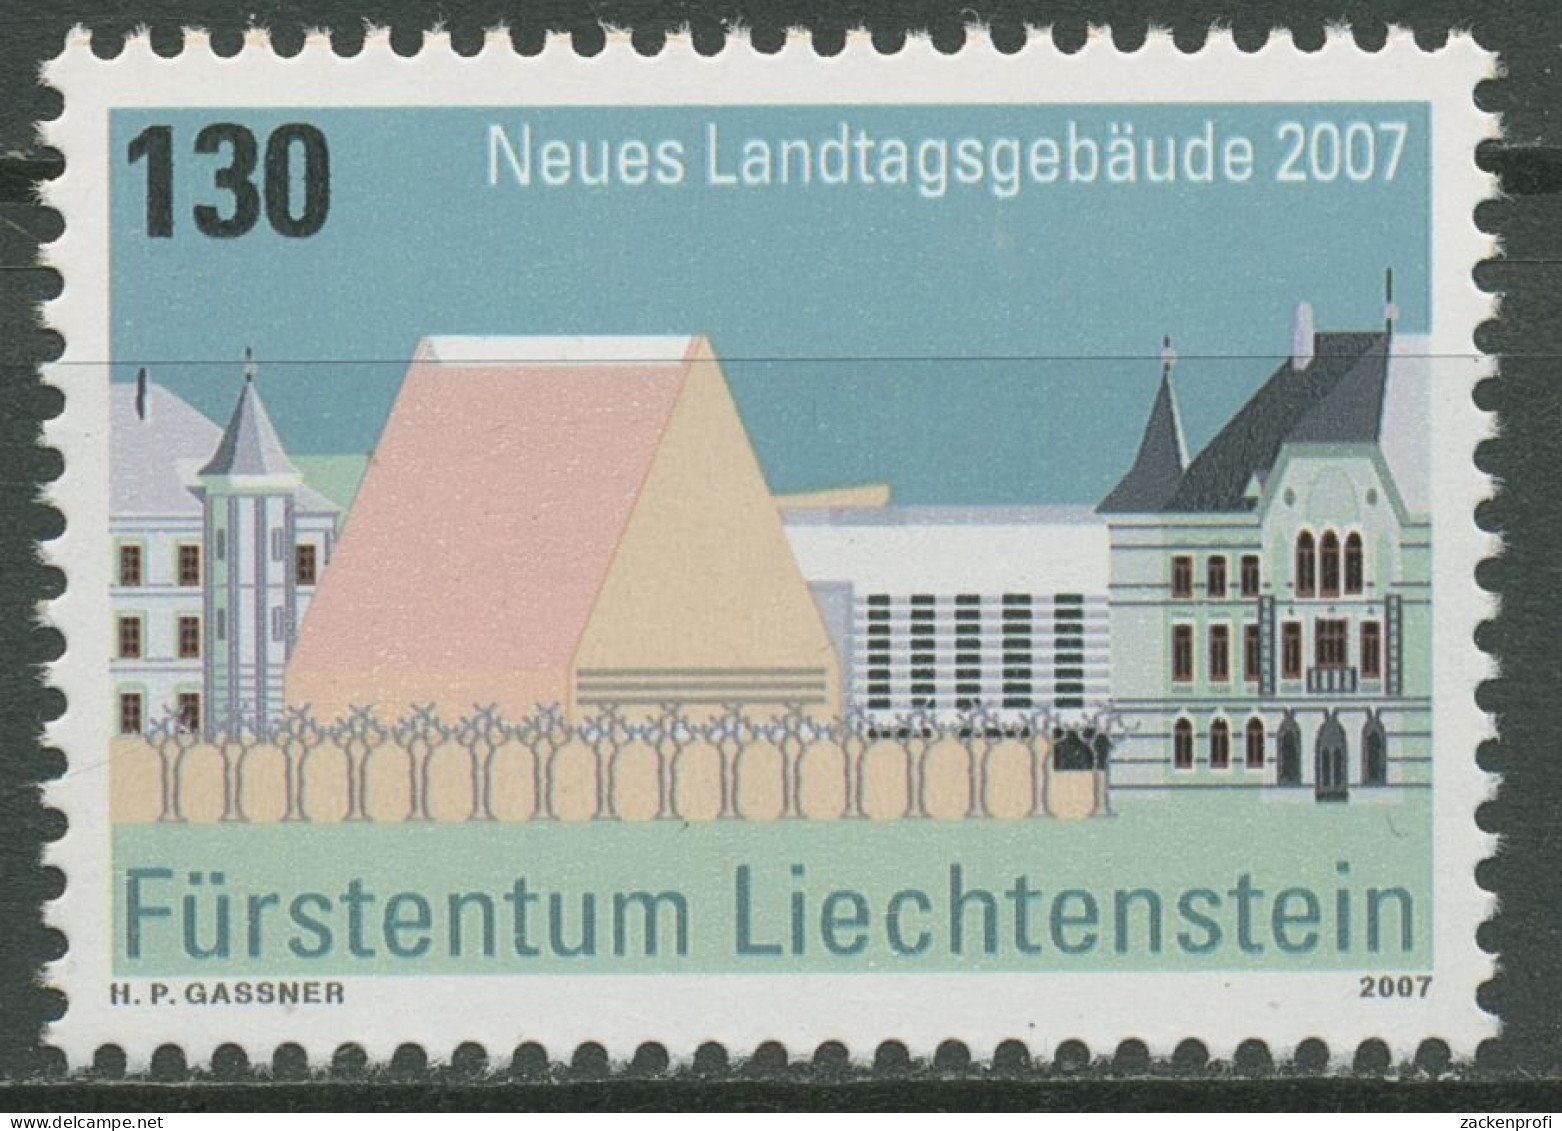 Liechtenstein 2007 Architektur Landtagsgebäude Vaduz 1469 Postfrisch - Ungebraucht